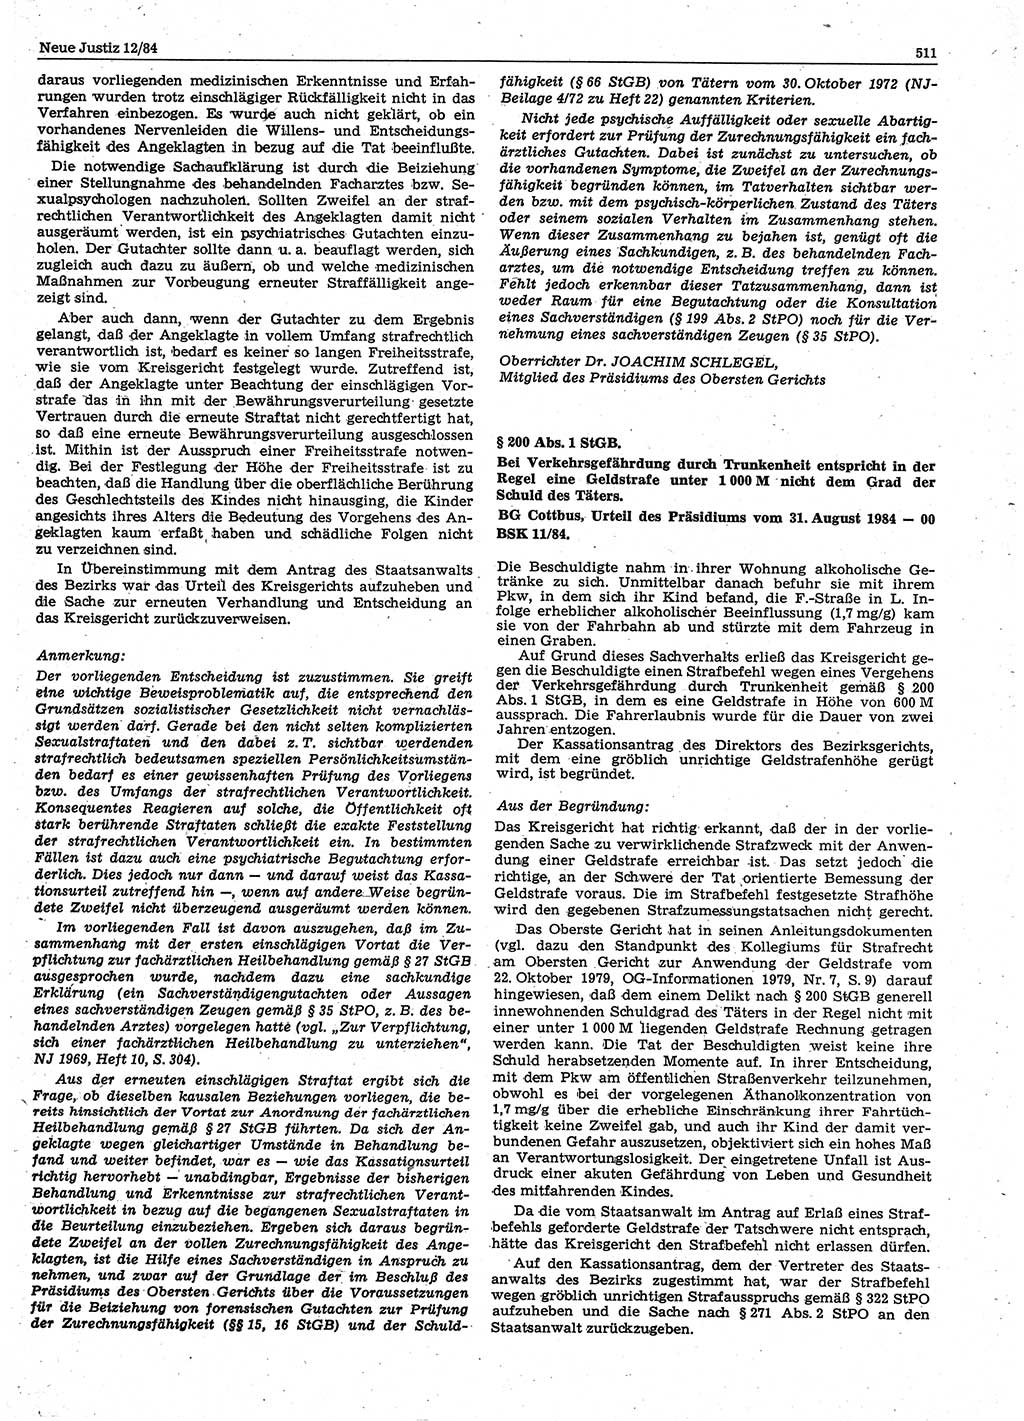 Neue Justiz (NJ), Zeitschrift für sozialistisches Recht und Gesetzlichkeit [Deutsche Demokratische Republik (DDR)], 38. Jahrgang 1984, Seite 511 (NJ DDR 1984, S. 511)